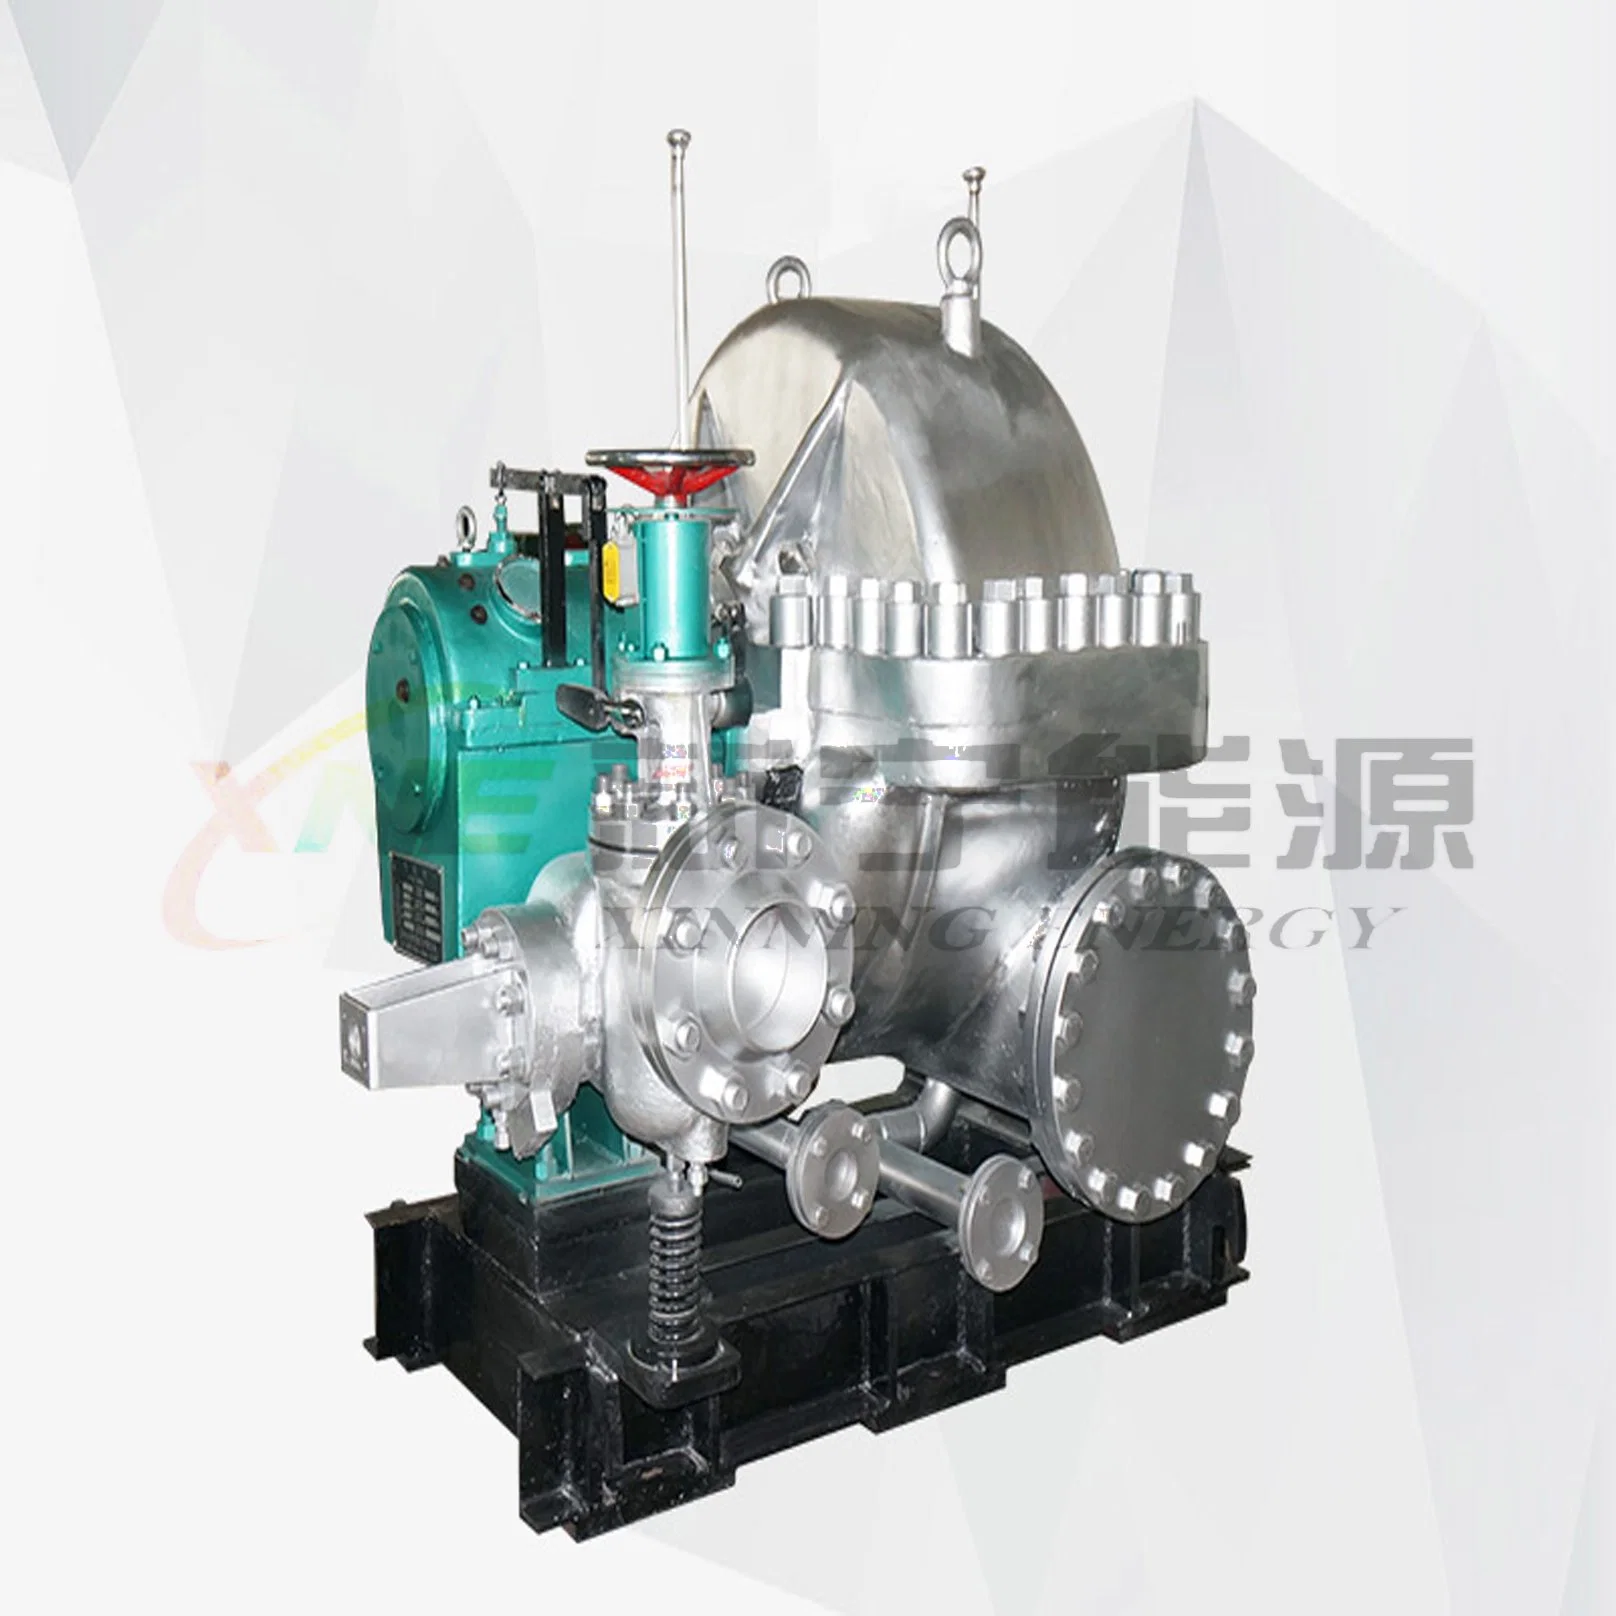 300kw-2800kw Back Pressure Type Steam Turbine